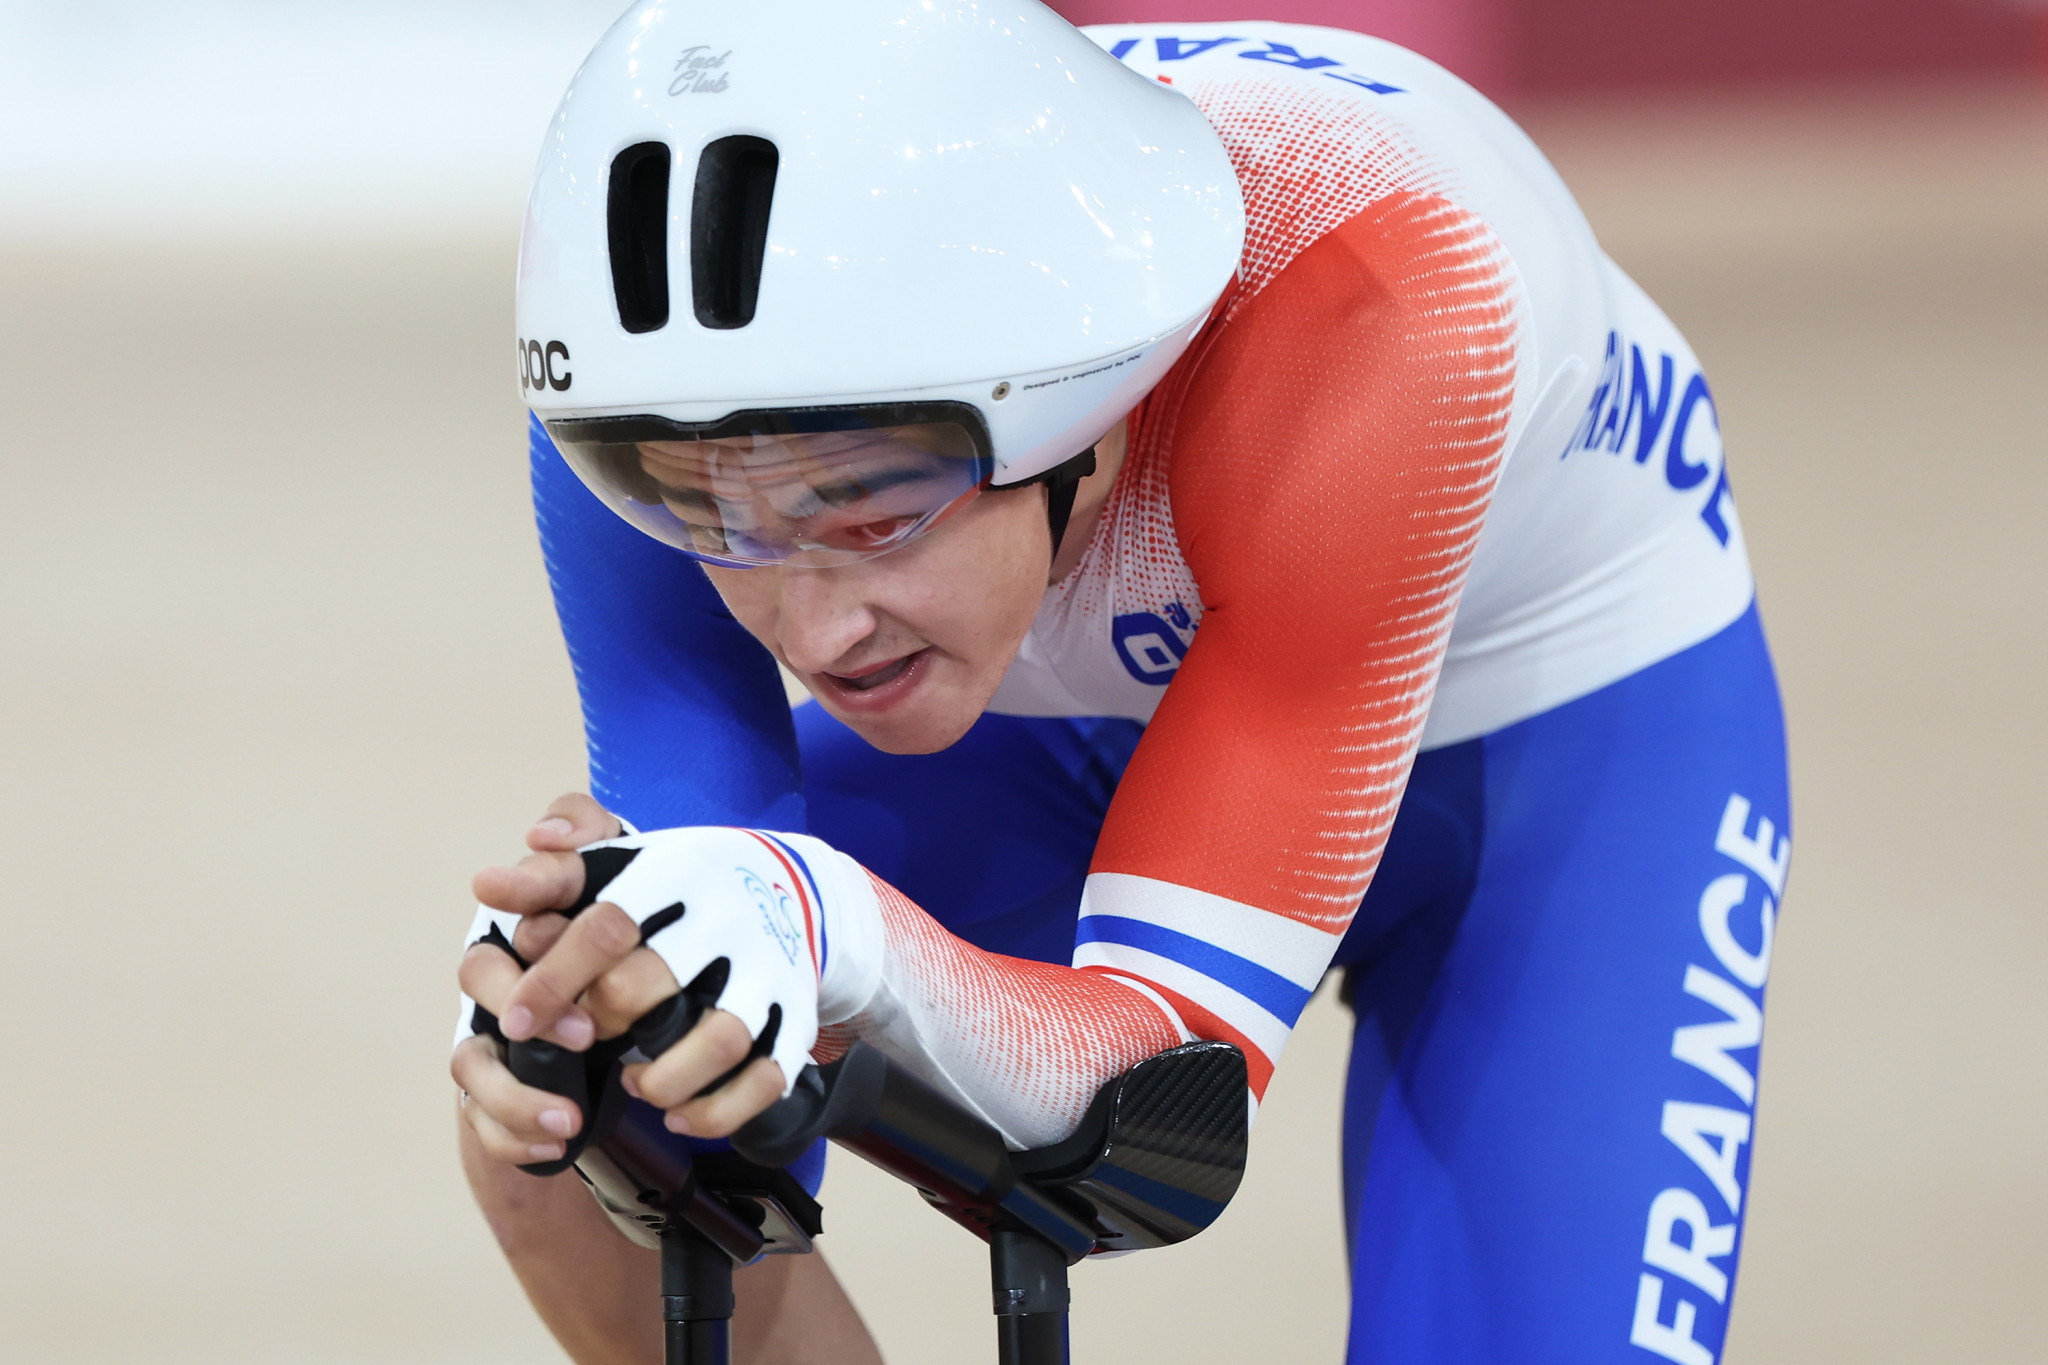 Alexandre Léauté won the men's C2 individual pursuit gold medal ©Getty Images